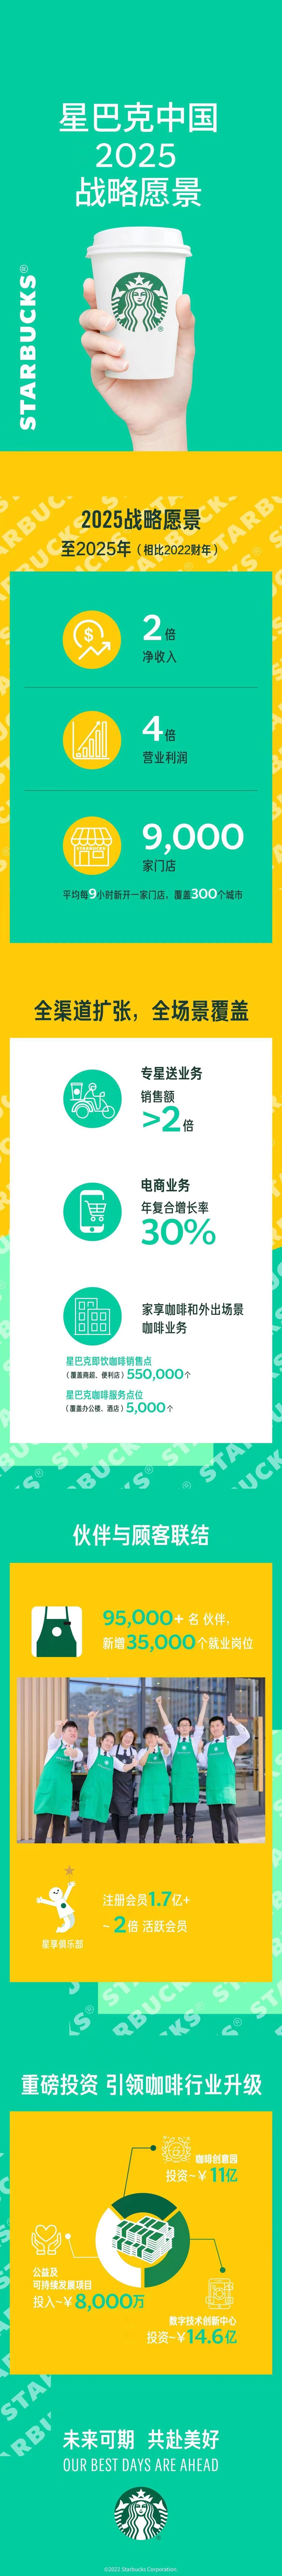 星巴克中国发布2025战略愿景 重磅加码中国市场